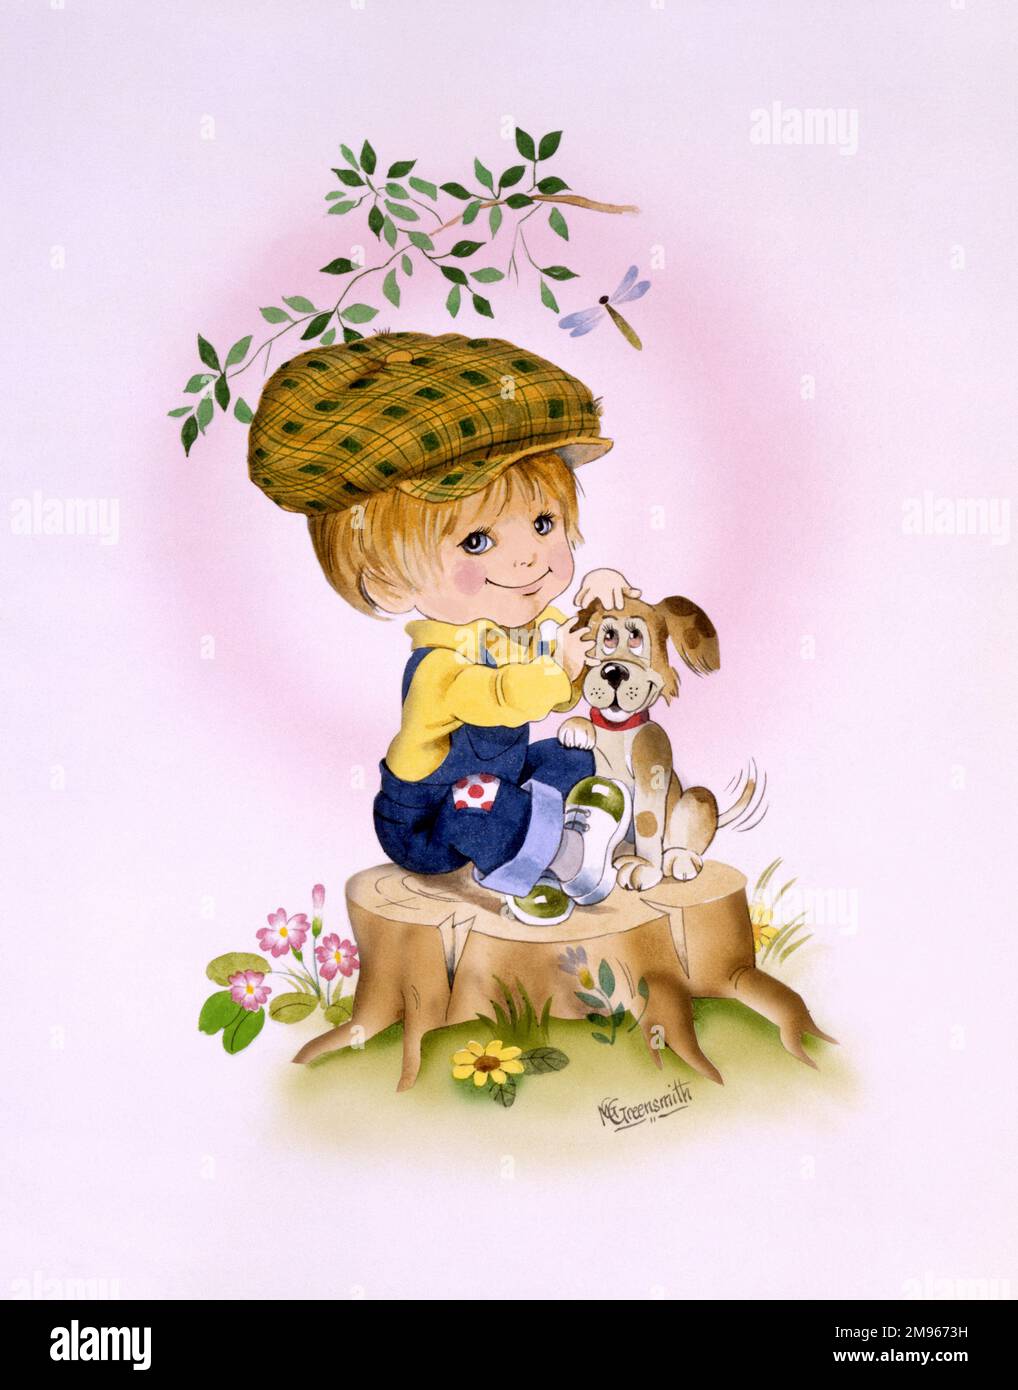 Une illustration de style caricature d'un jeune garçon avec son chien, portant une casquette plate et assis au-dessus d'une souche d'arbre. Banque D'Images